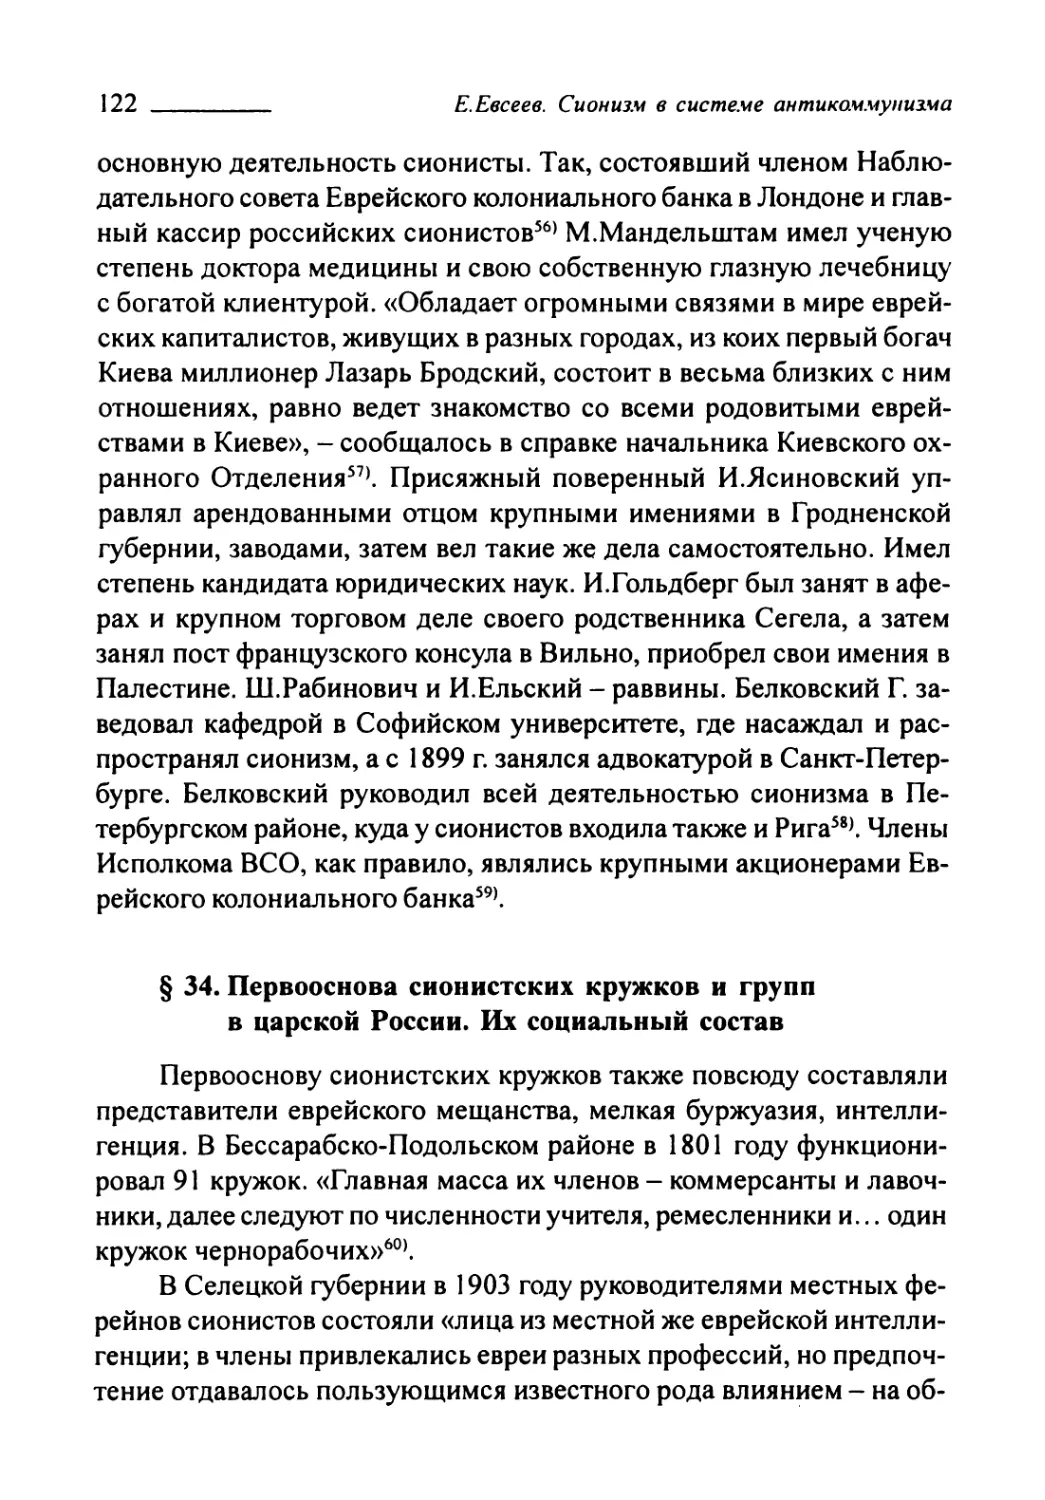 § 34. Первооснова сионистских кружков и групп в царской России. Их социальный состав